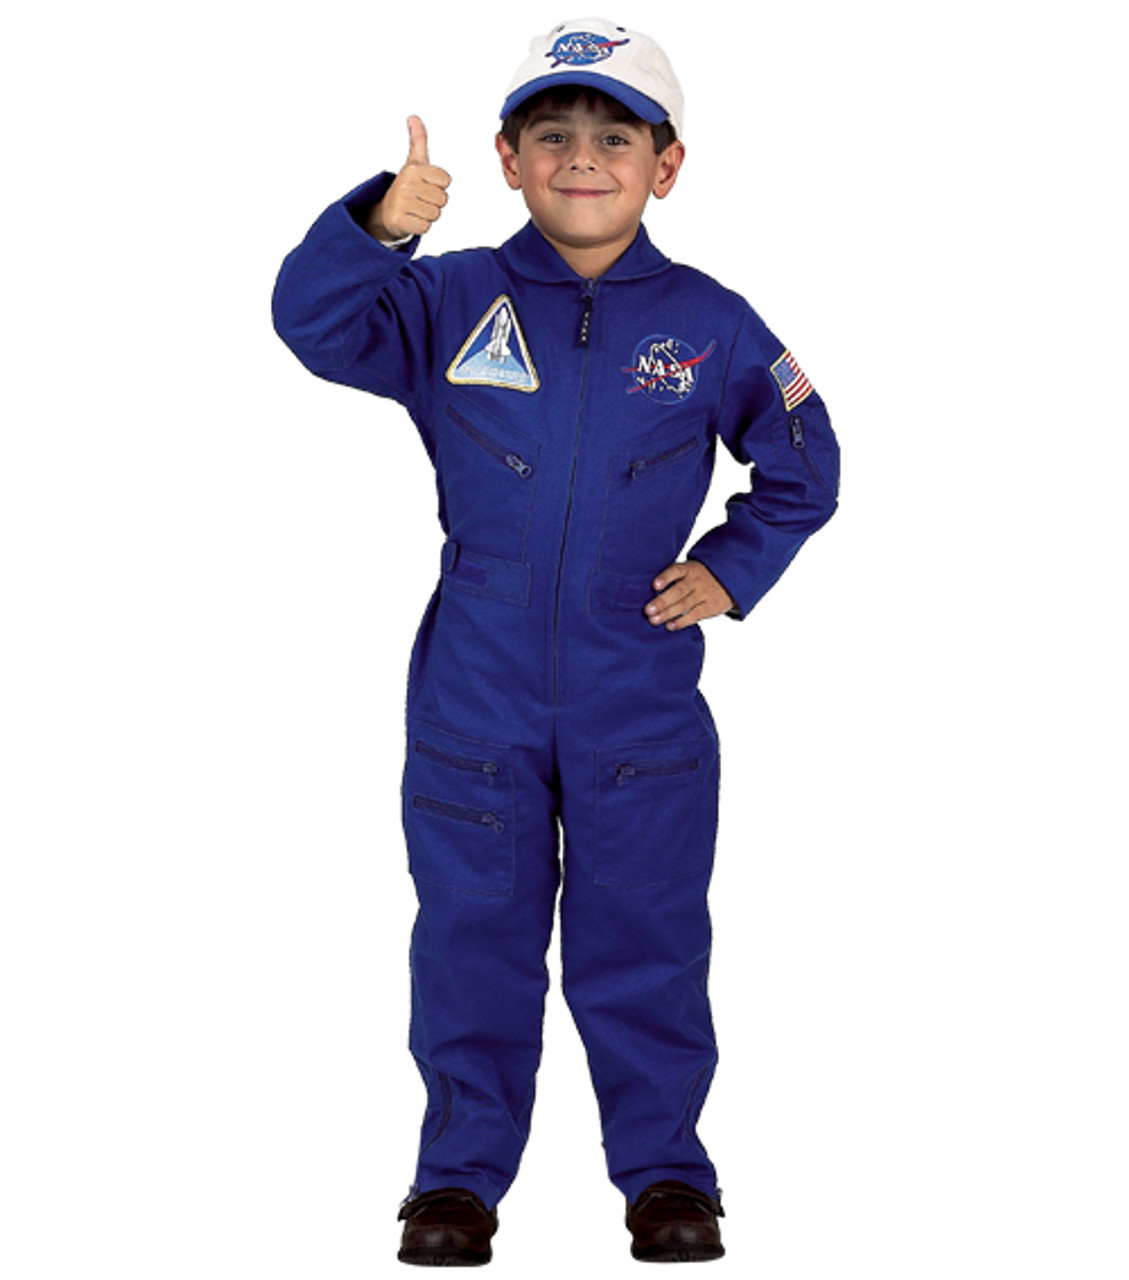 nasa space uniforms